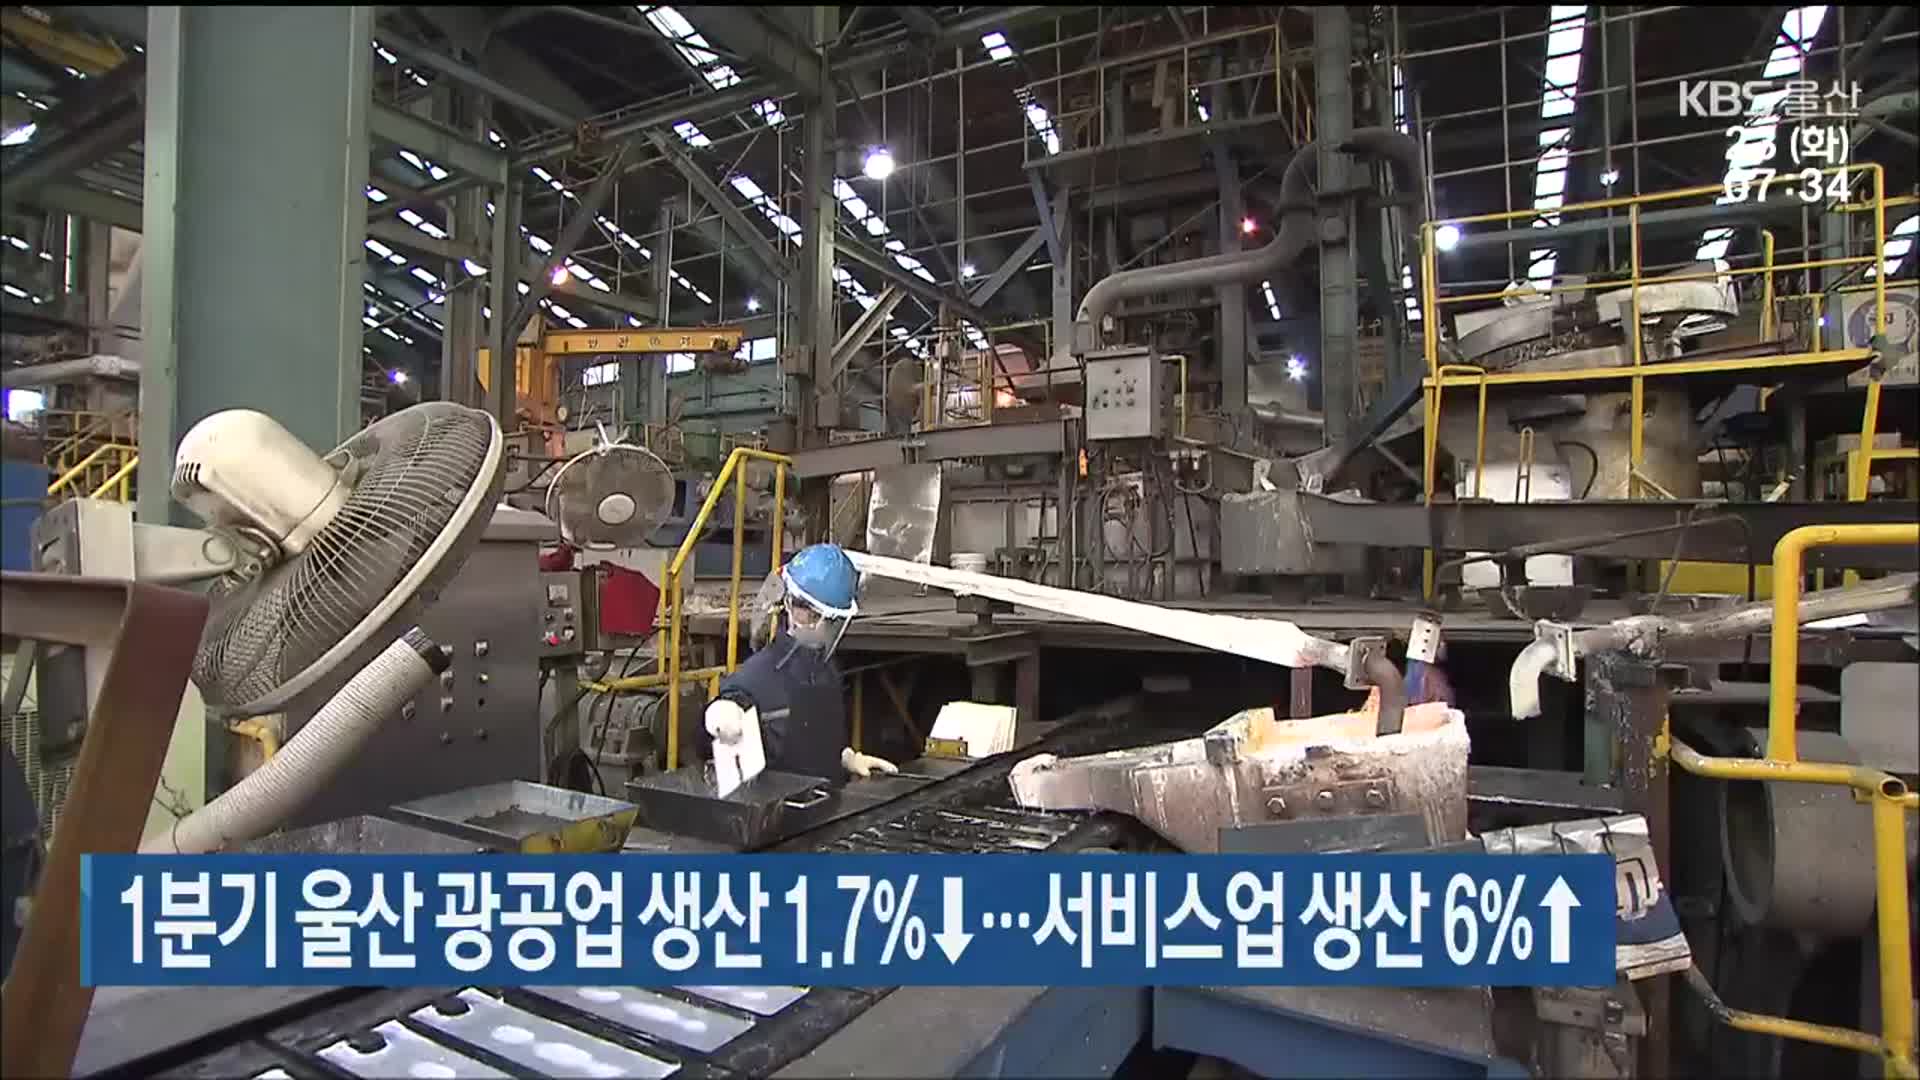 1분기 울산 광공업 생산 1.7%↓…서비스업 생산 6%↑